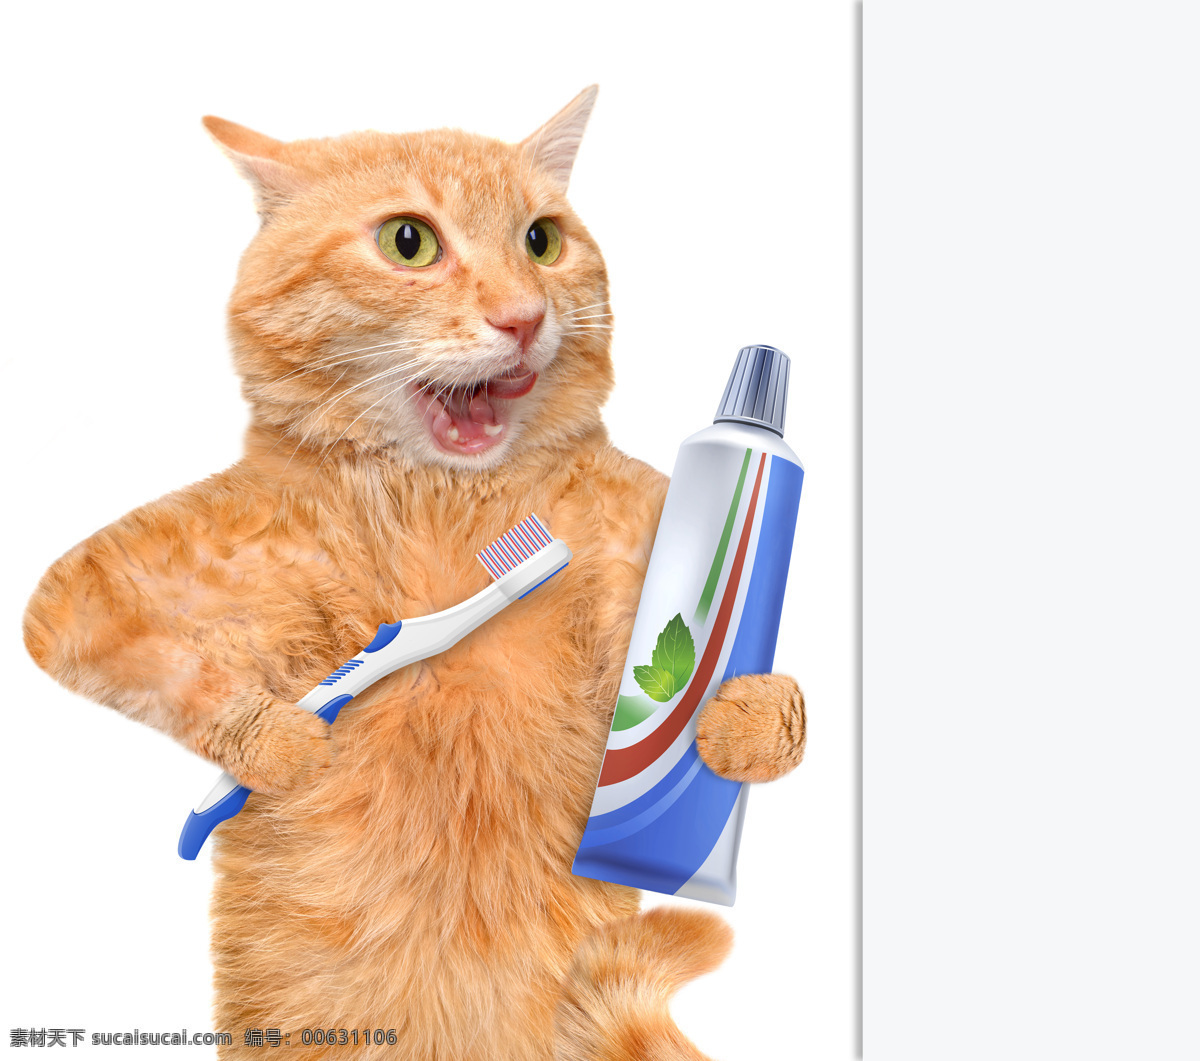 刷牙 小猫 牙刷 牙膏 猫 有趣的猫咪 宠物 猫科动物 野生动物 动物世界 陆地动物 动物摄影 猫咪图片 生物世界